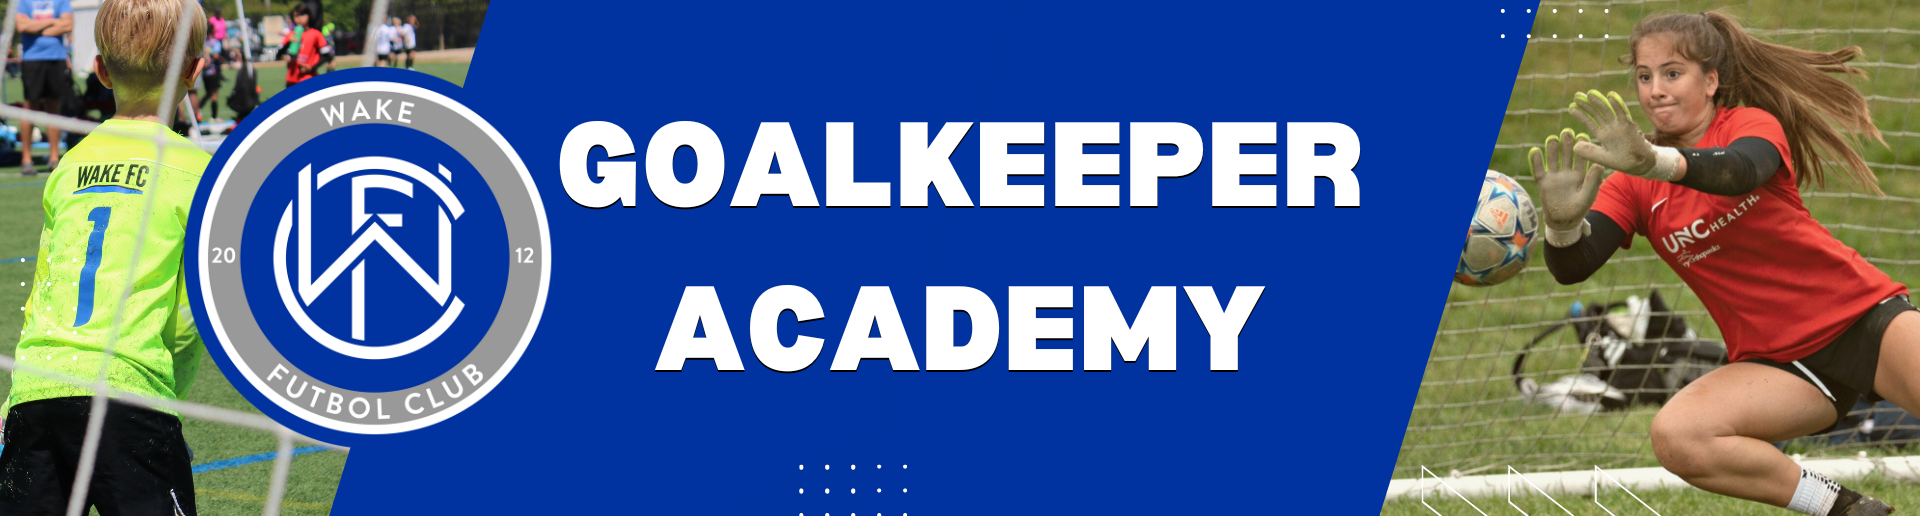 Goalkeeper Academy